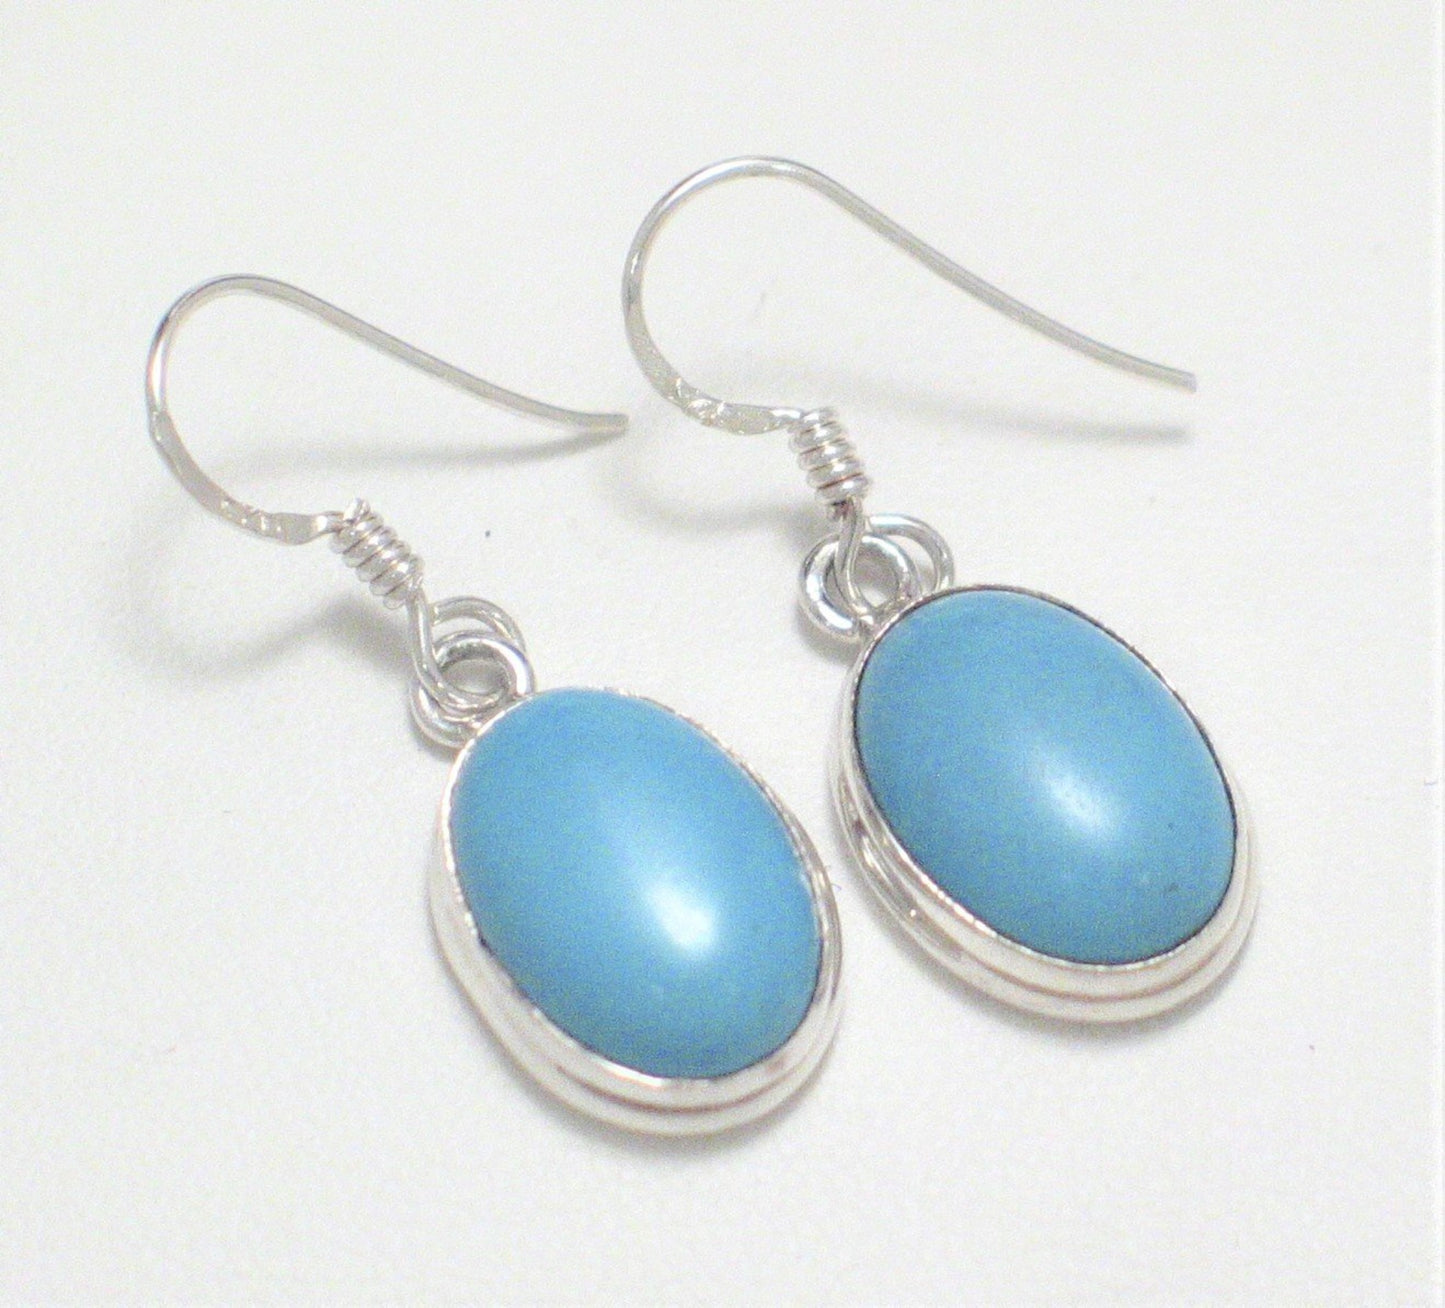 Dangle Earrings, Bold Baby Blue Oval Turquoise Stone Sterling Silver Drop Earrings - Blingschlingers Jewelry